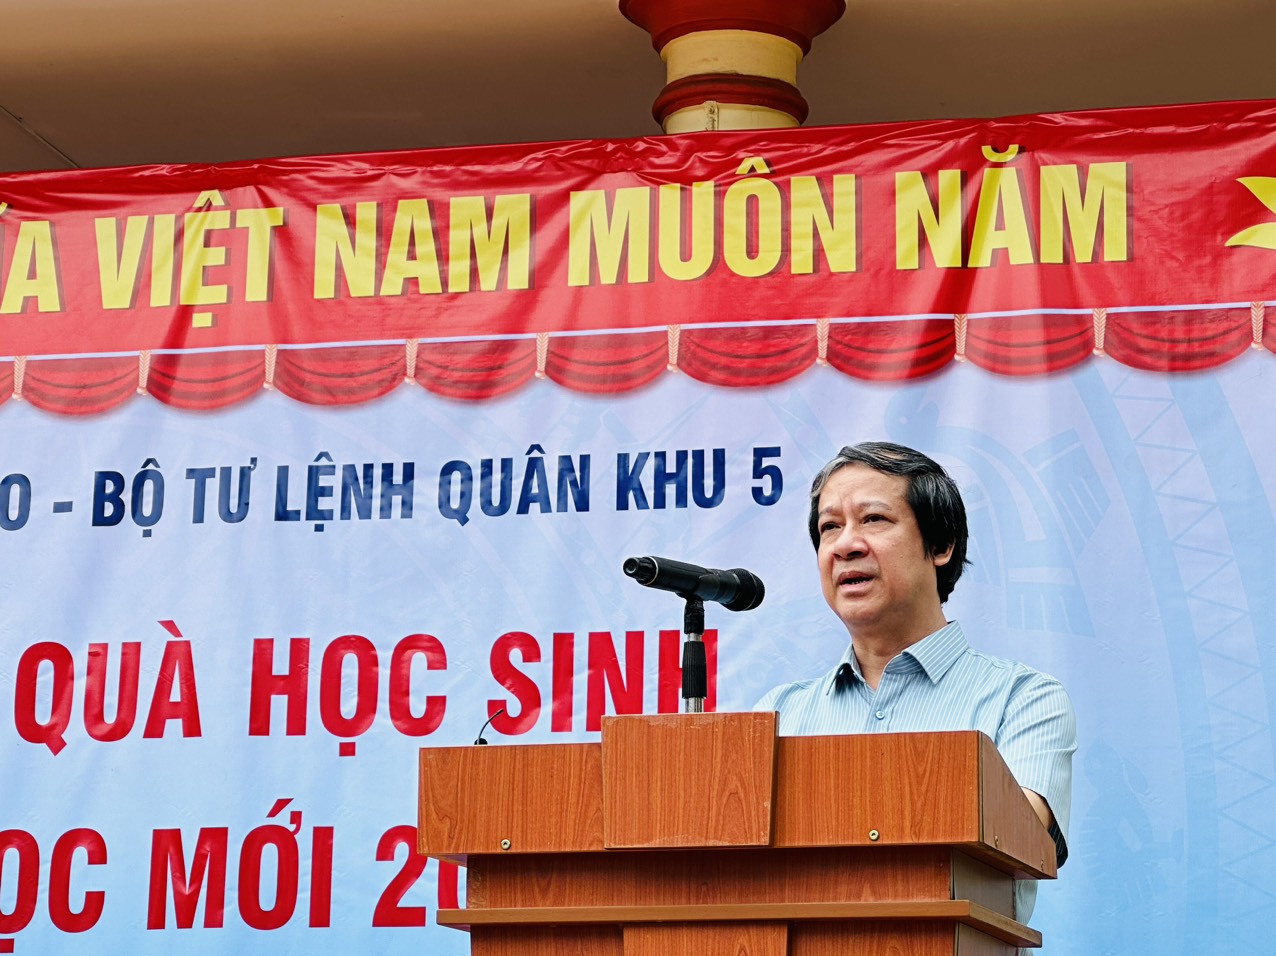 Bộ trưởng Nguyễn Kim Sơn thăm học sinh vùng khó trước thềm năm học mới  ảnh 2